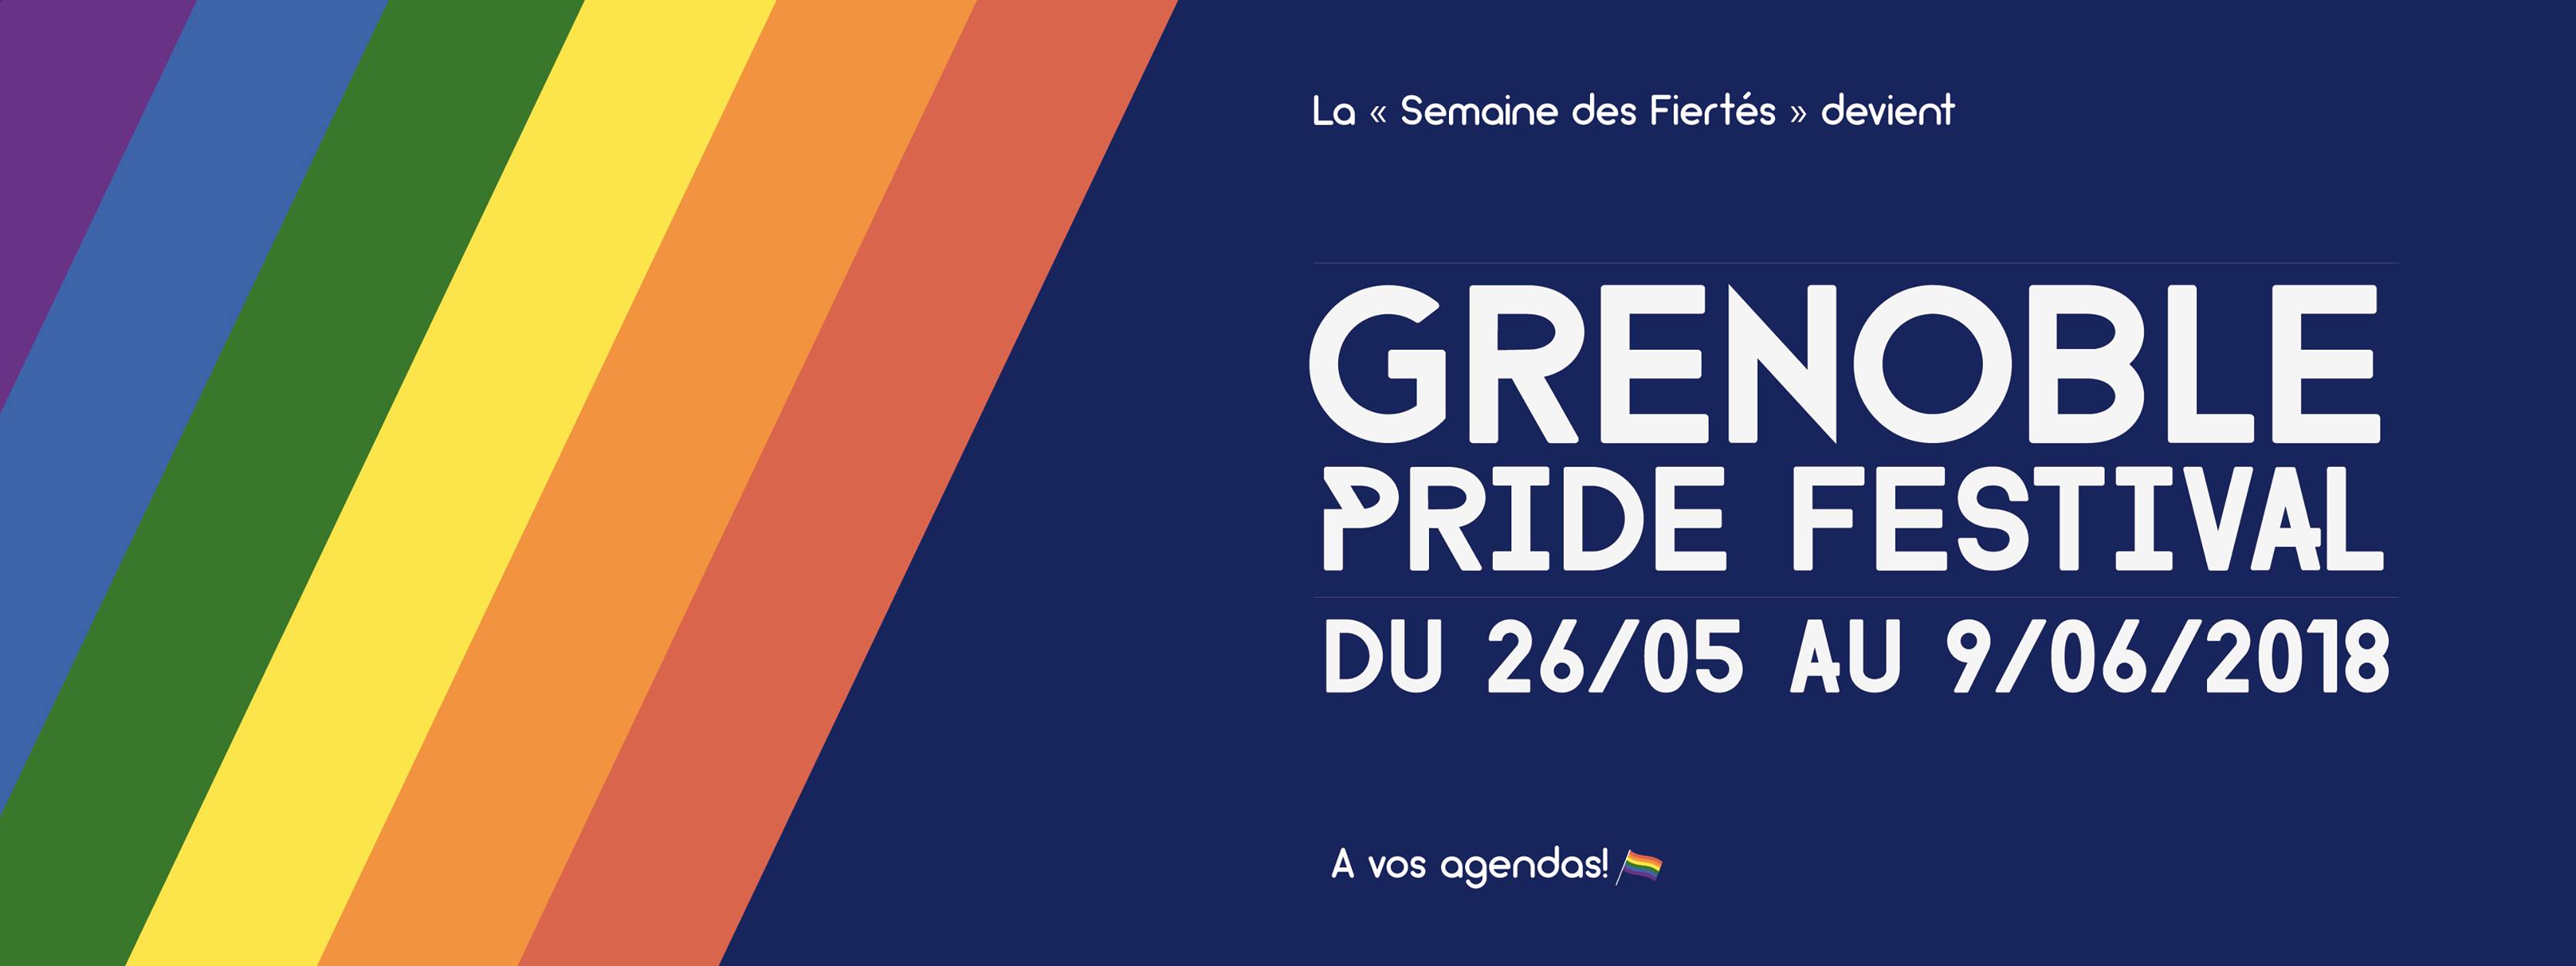 Grenoble Pride Festival 2018